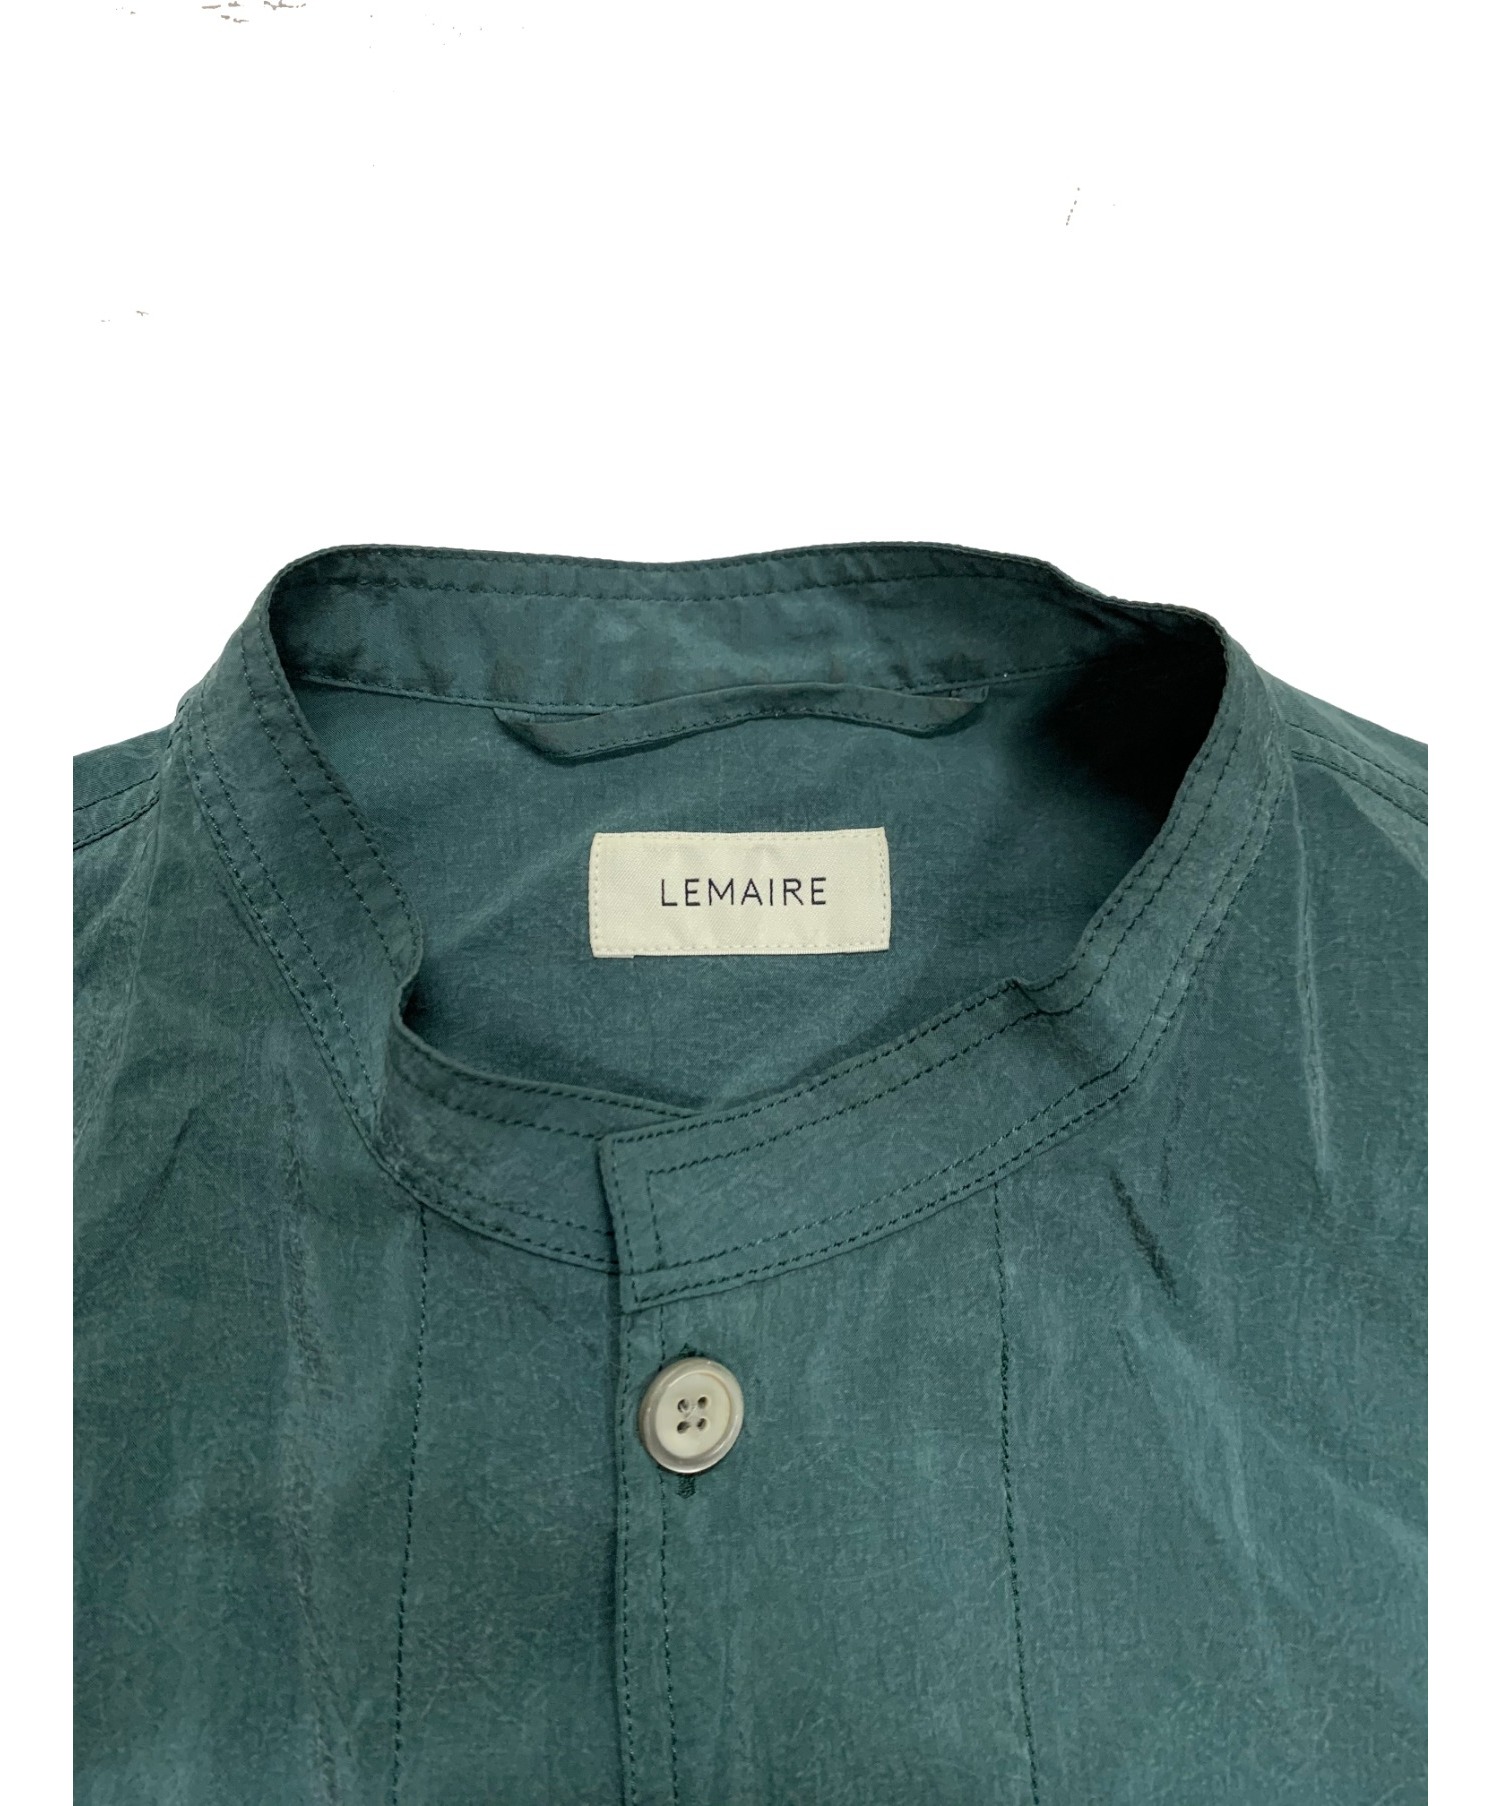 LEMAIRE (ルメール) バンドカラーシャツ グリーン サイズ:48